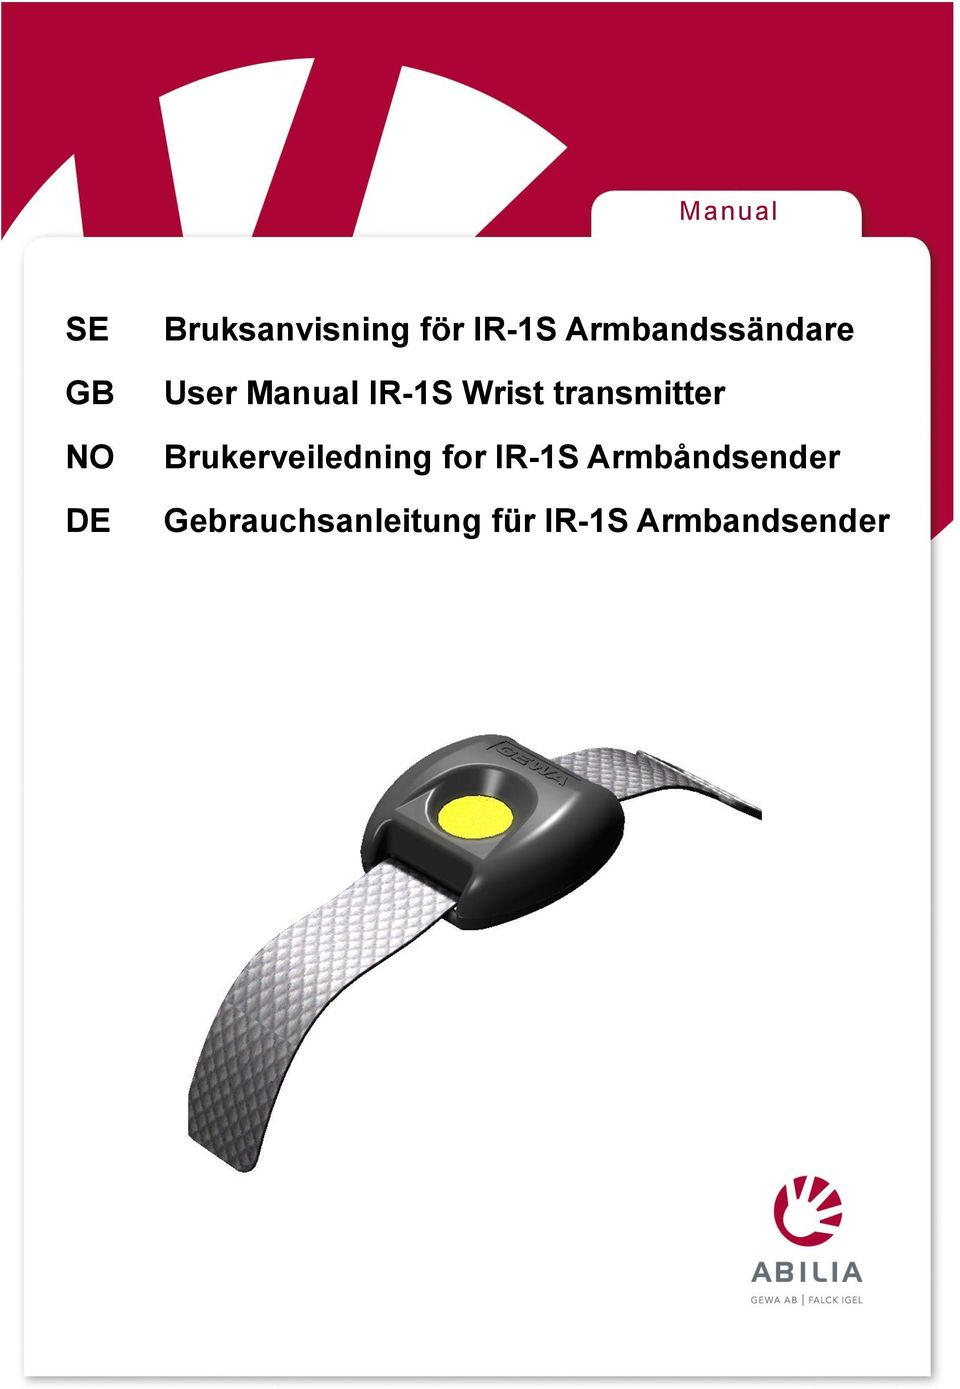 transmitter Brukerveiledning for IR-1S